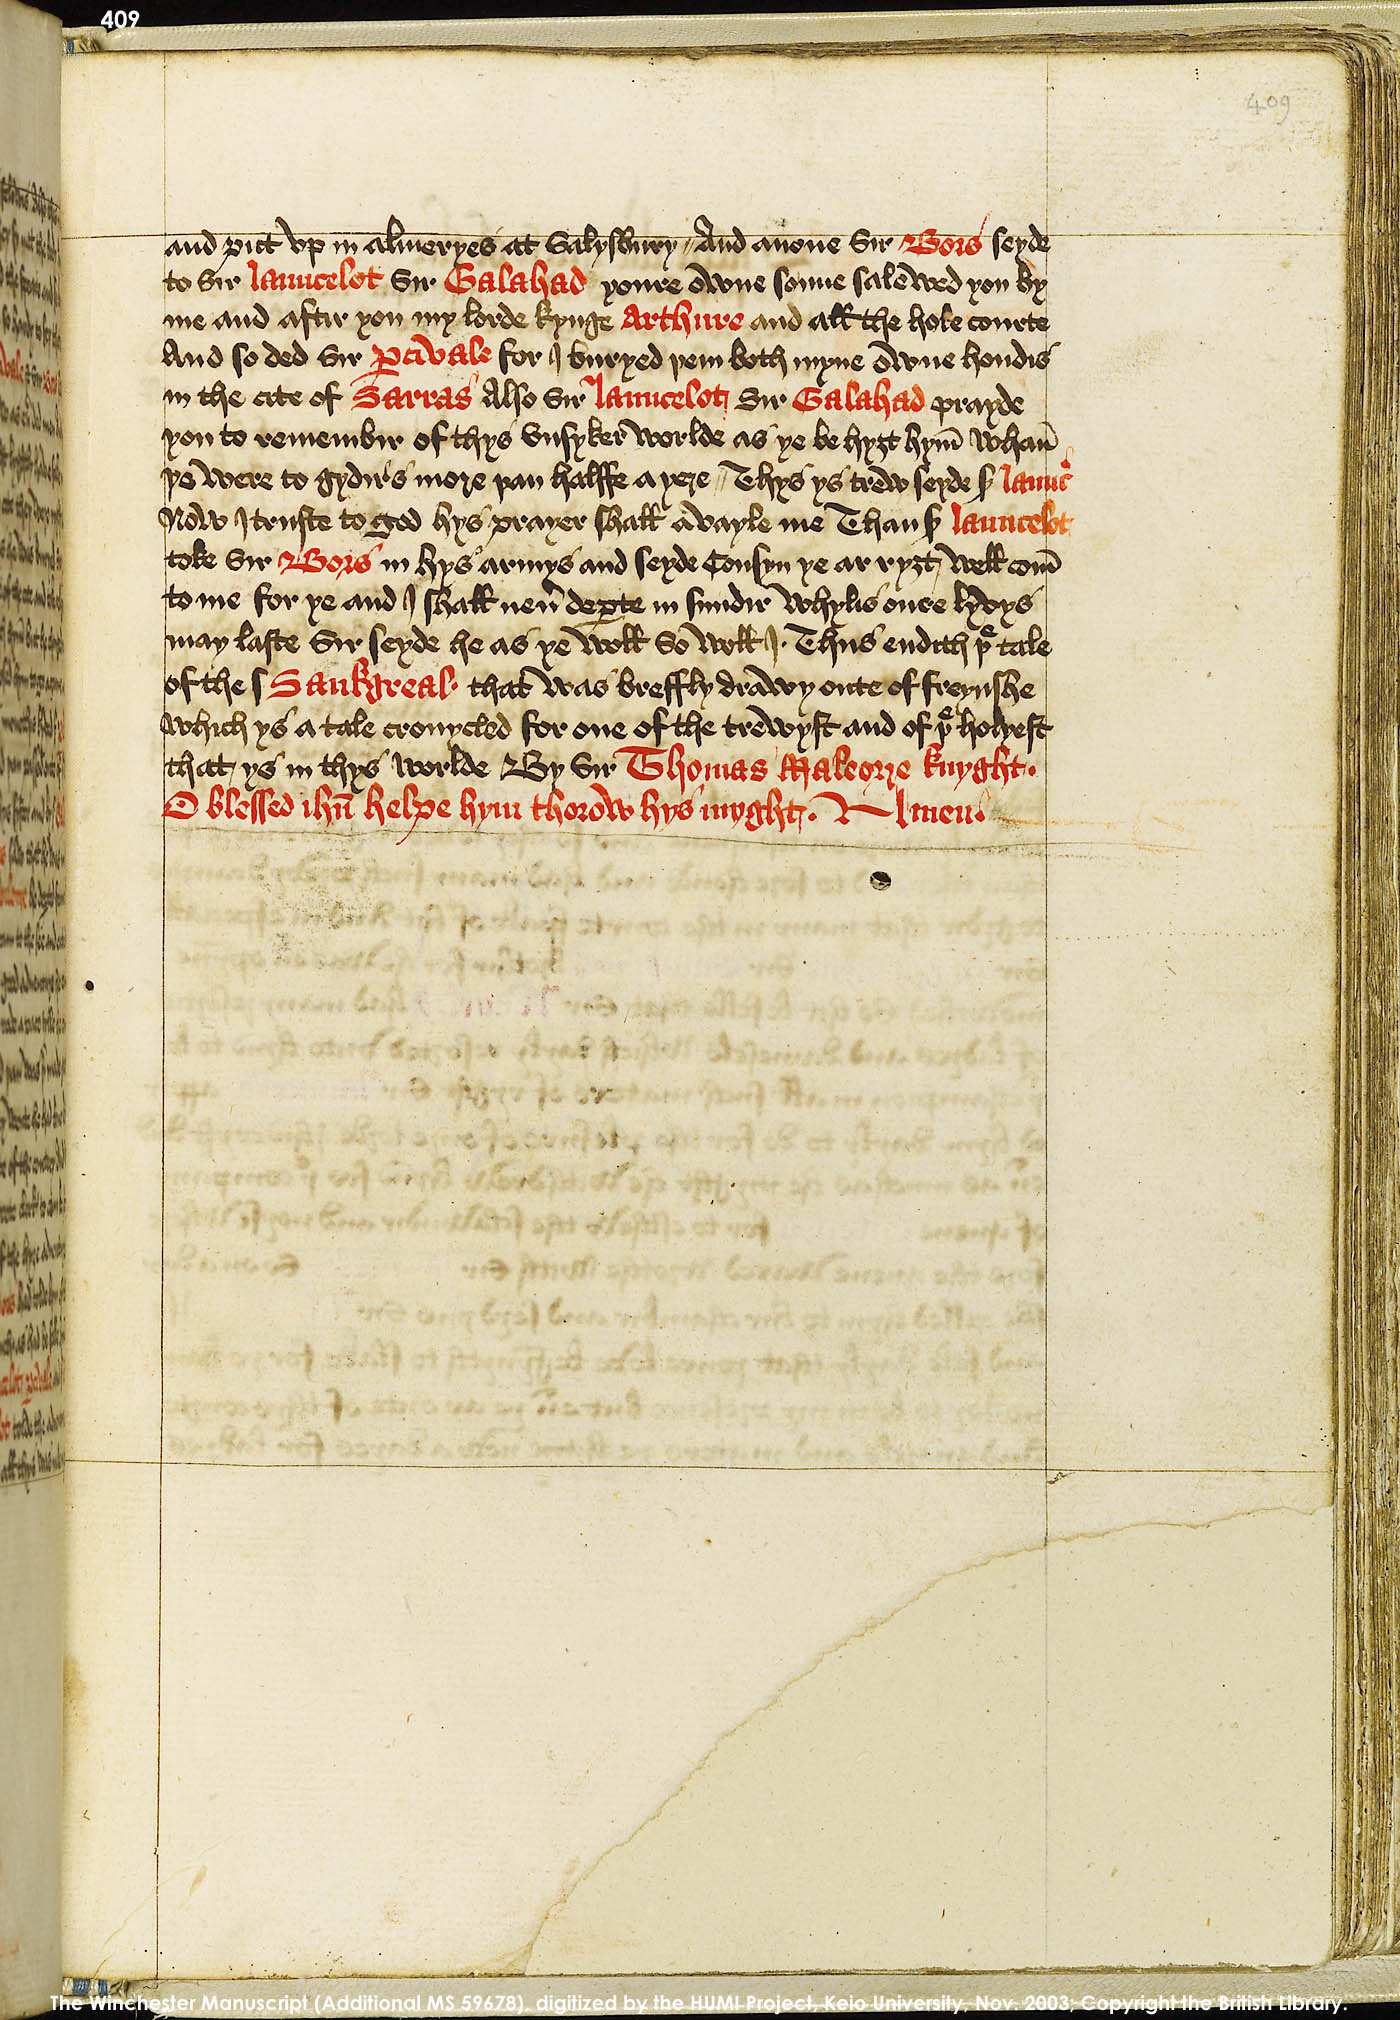 Folio 409r